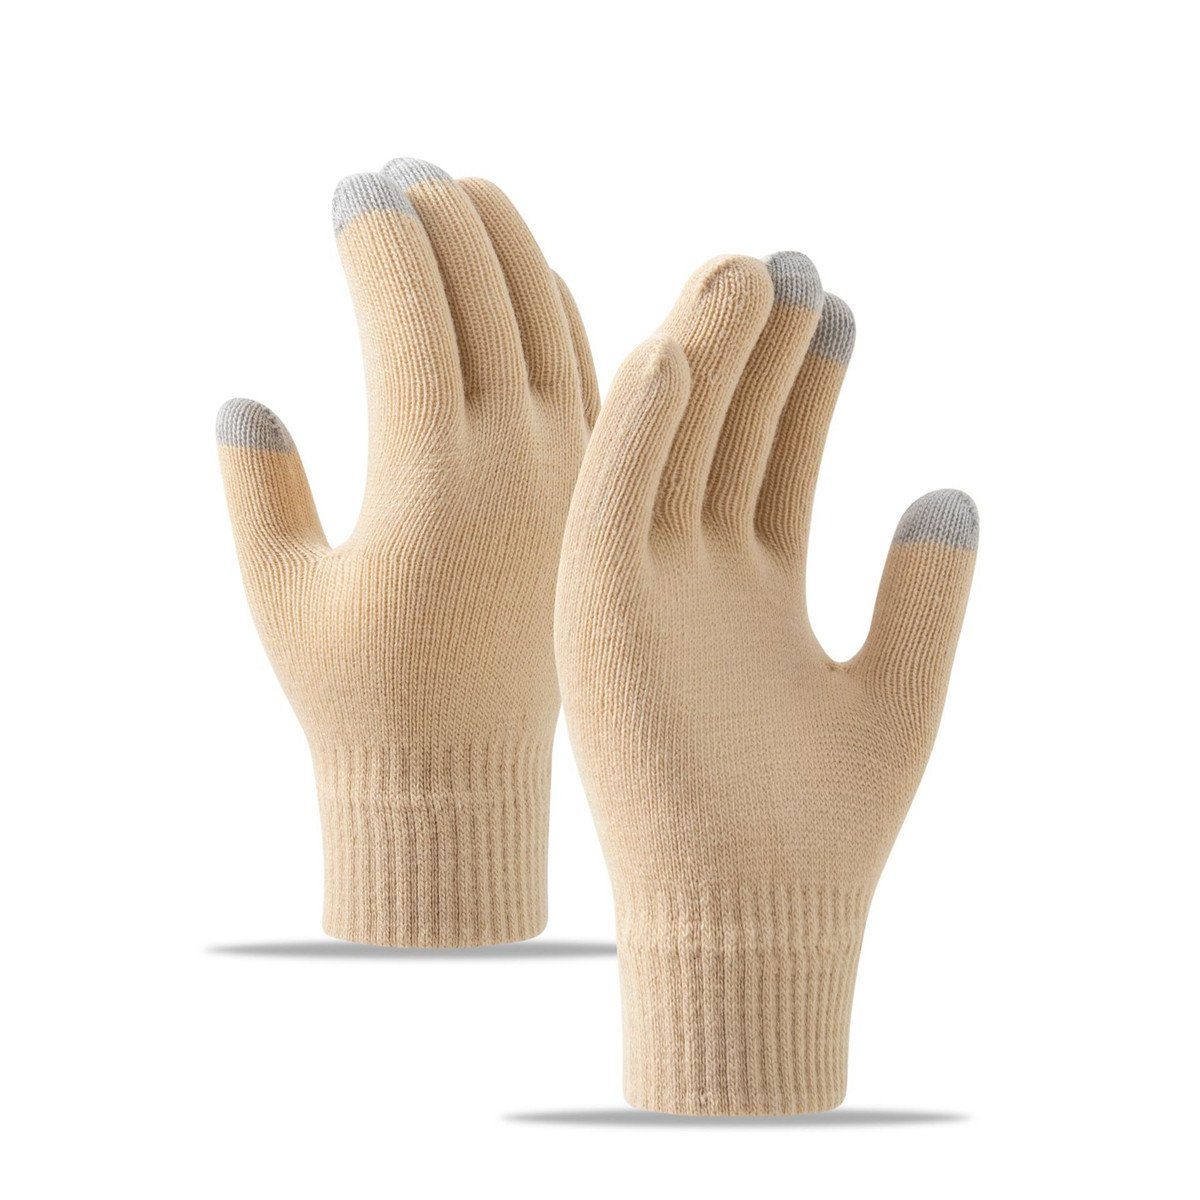 Die Sterne Trikot-Handschuhe Gestrickte Handschuhe mit Schneeflocken-, Strass- und Fleece-Stickerei Beige